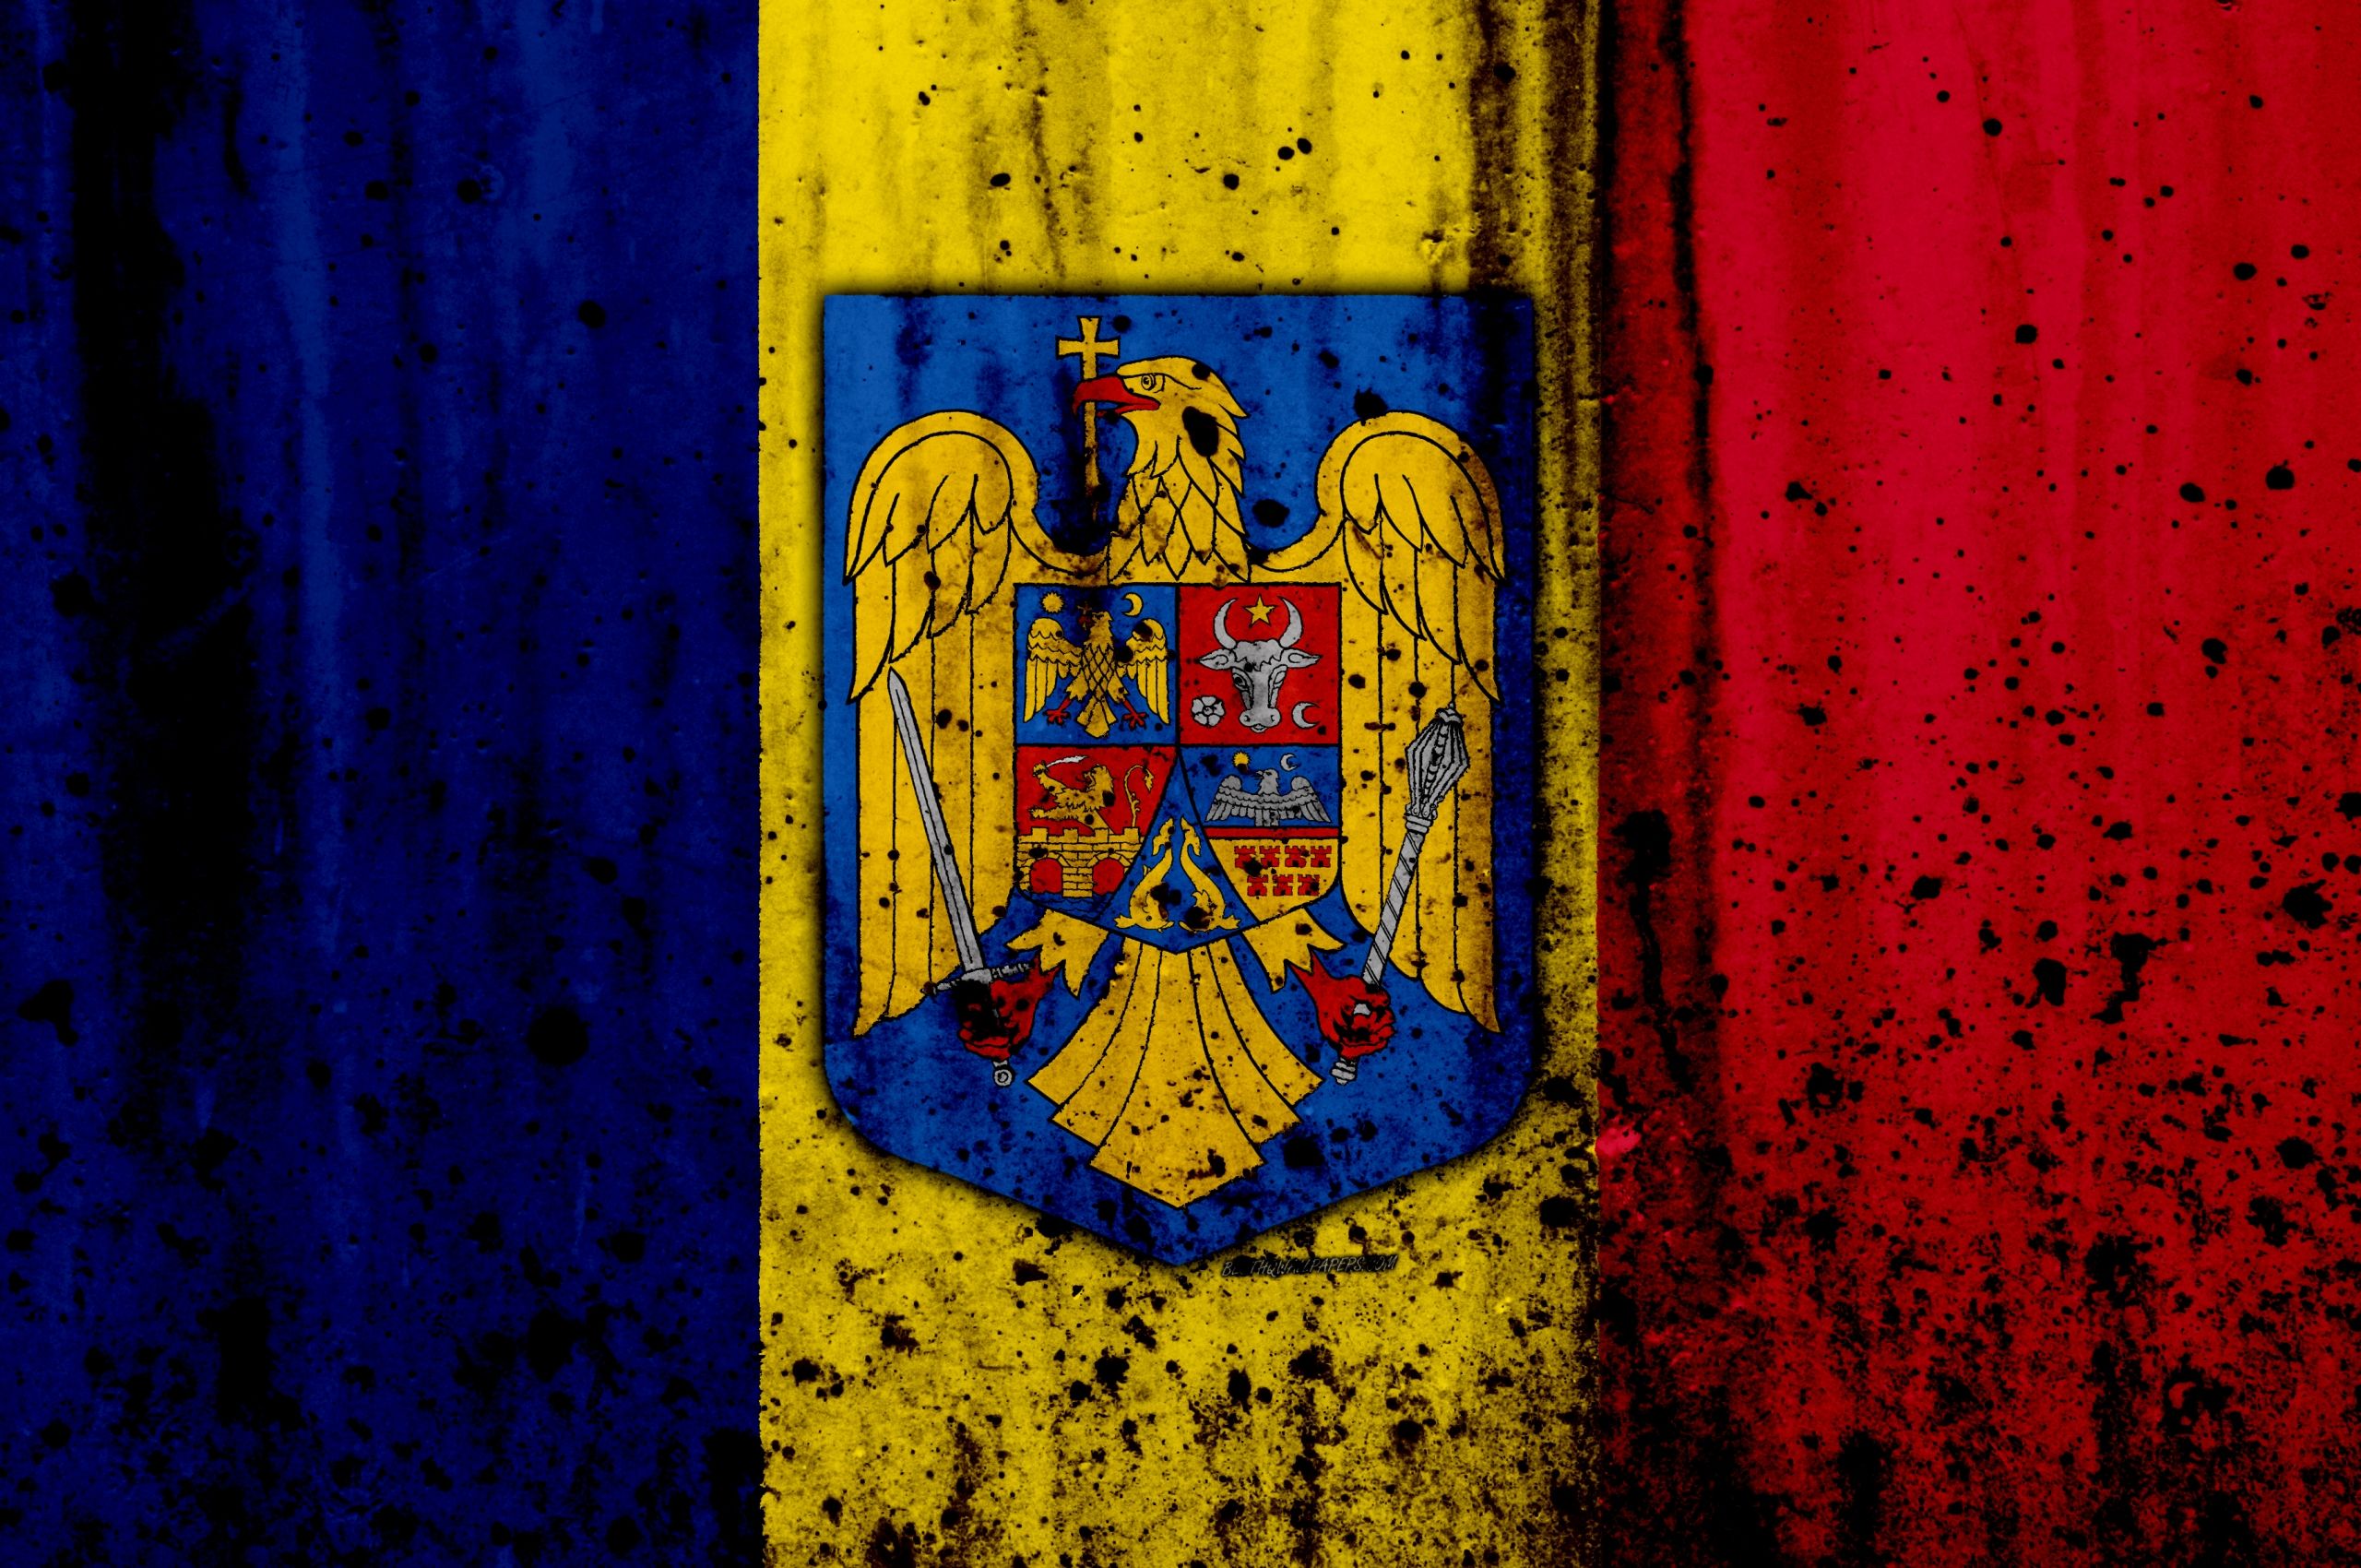 флаг румынии